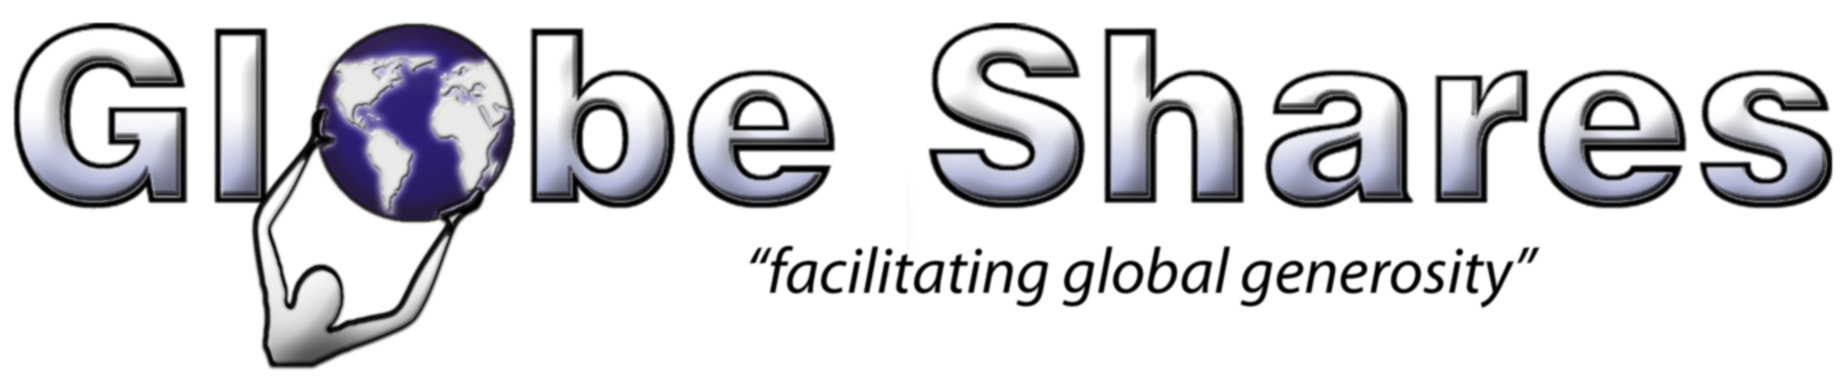 Globe Shares logo